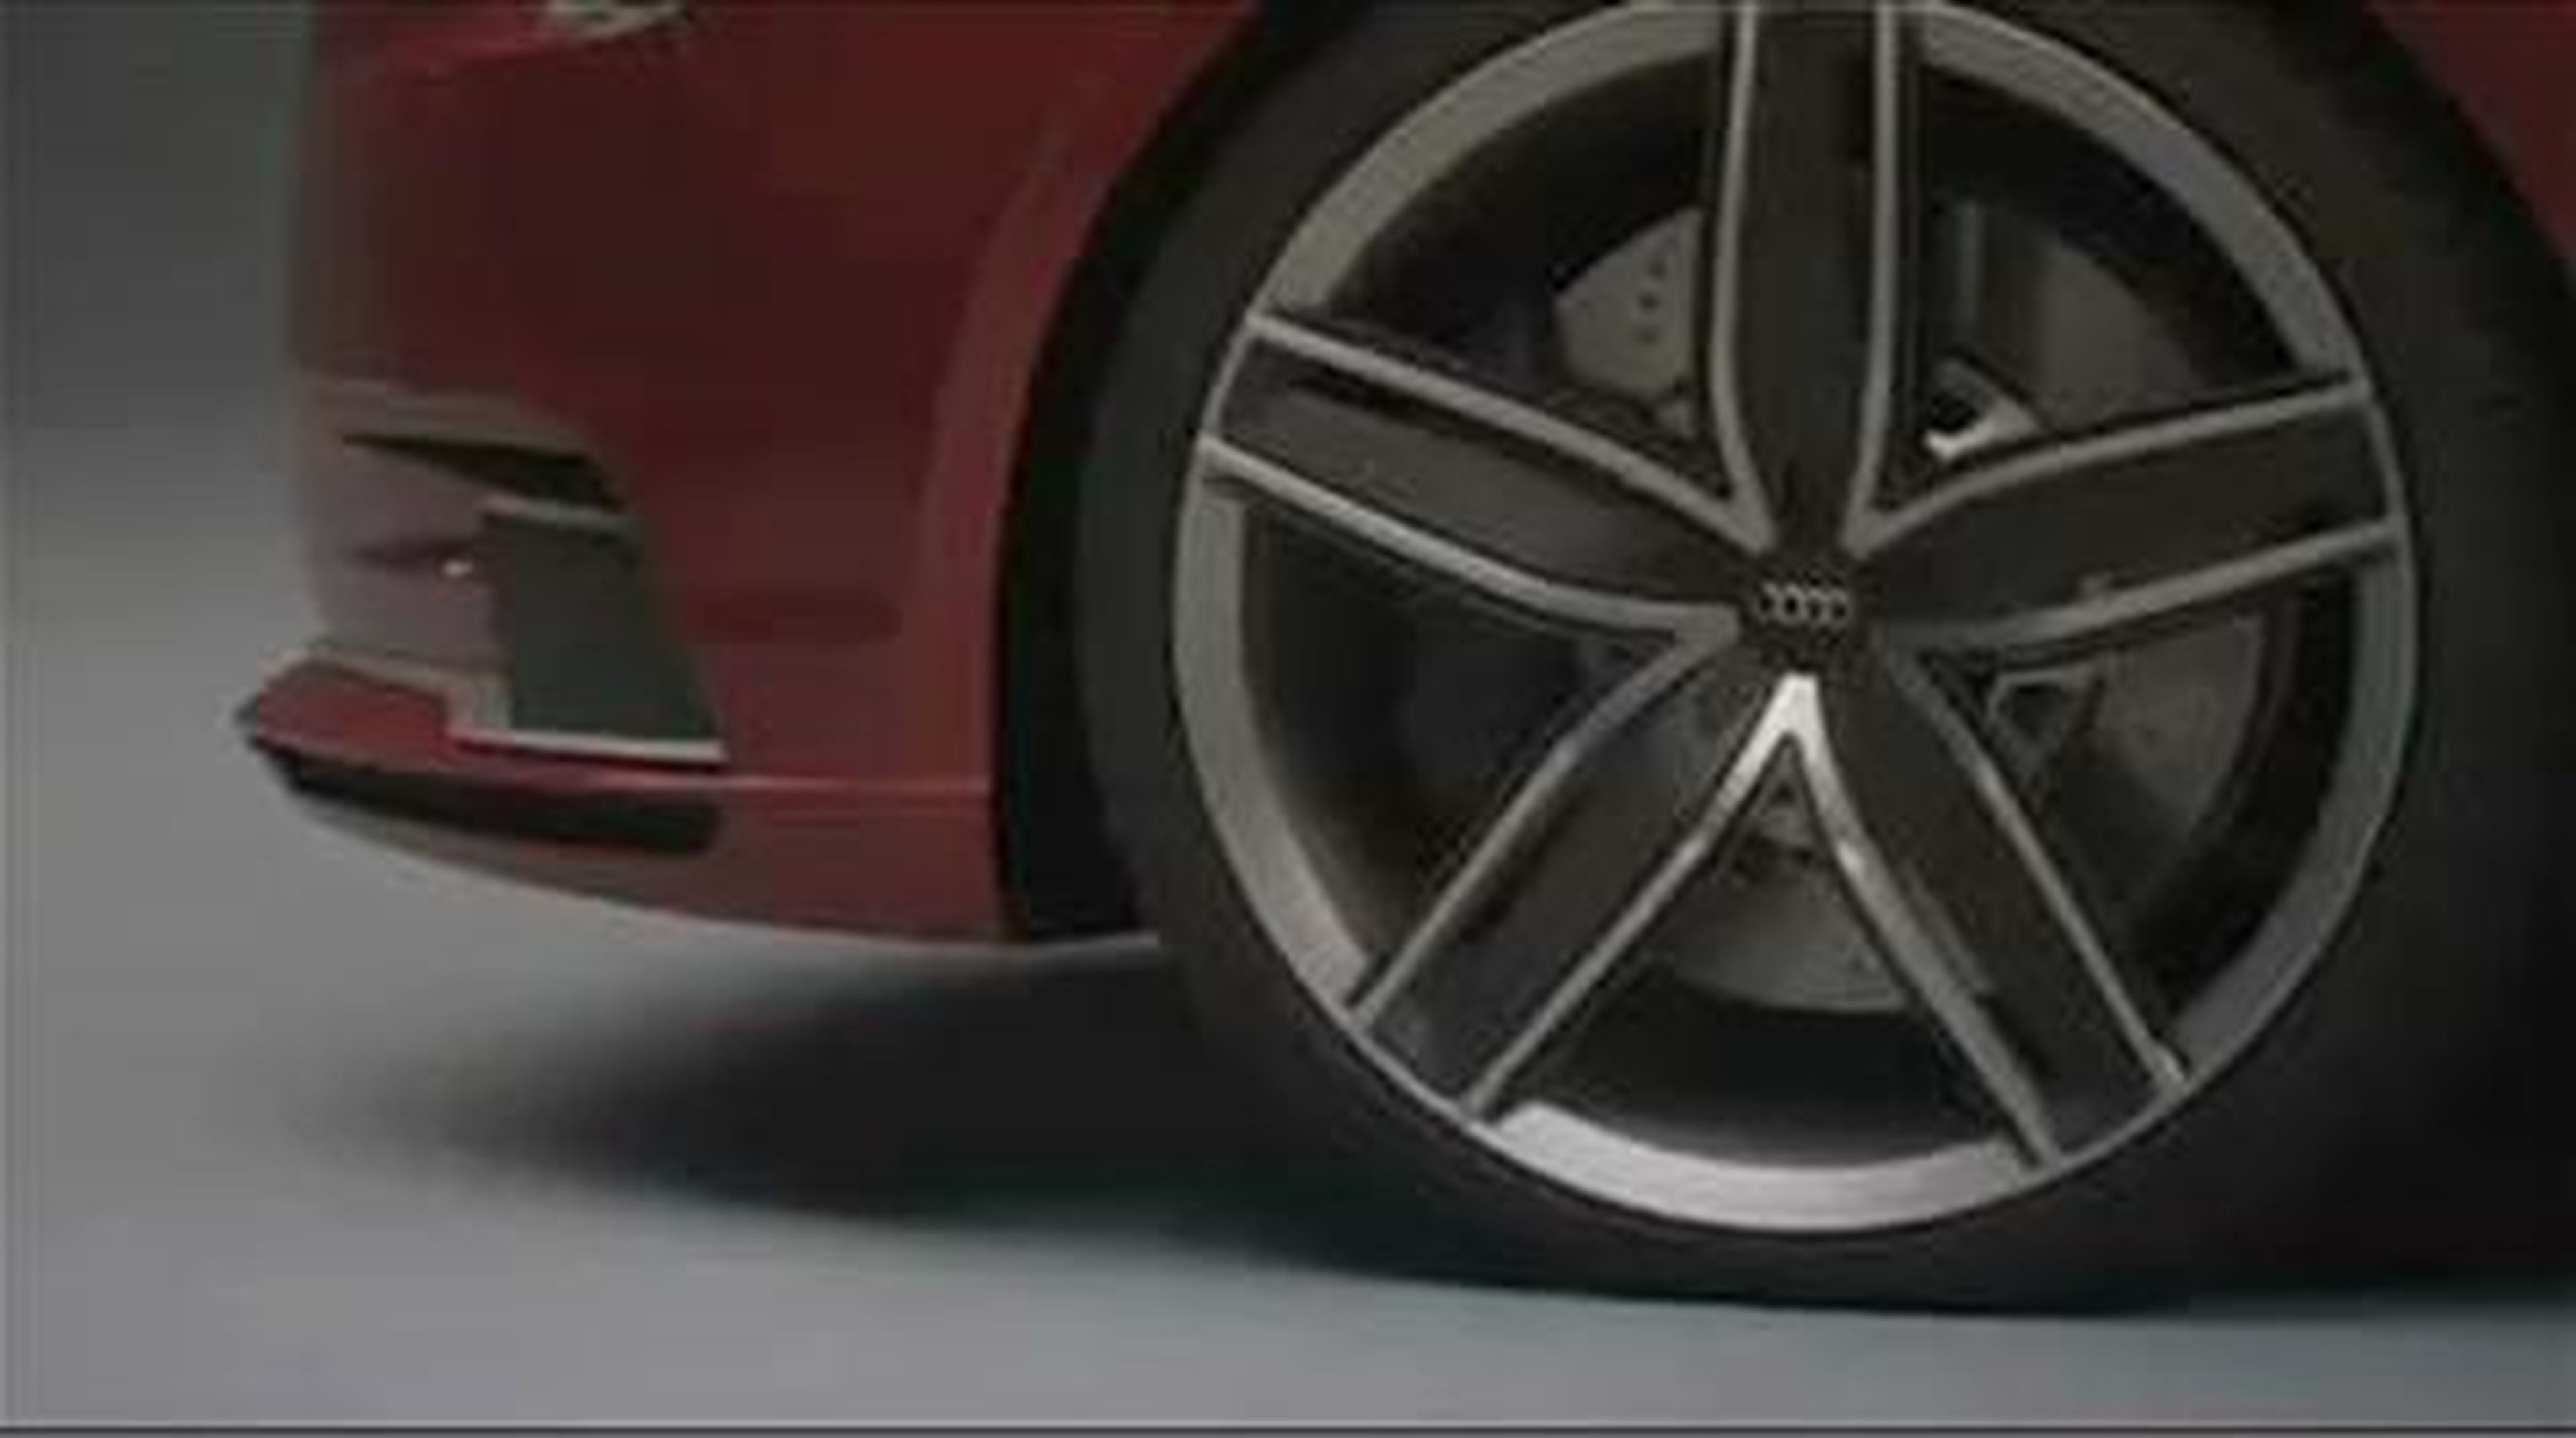 Audi A3 Concept: el sucesor